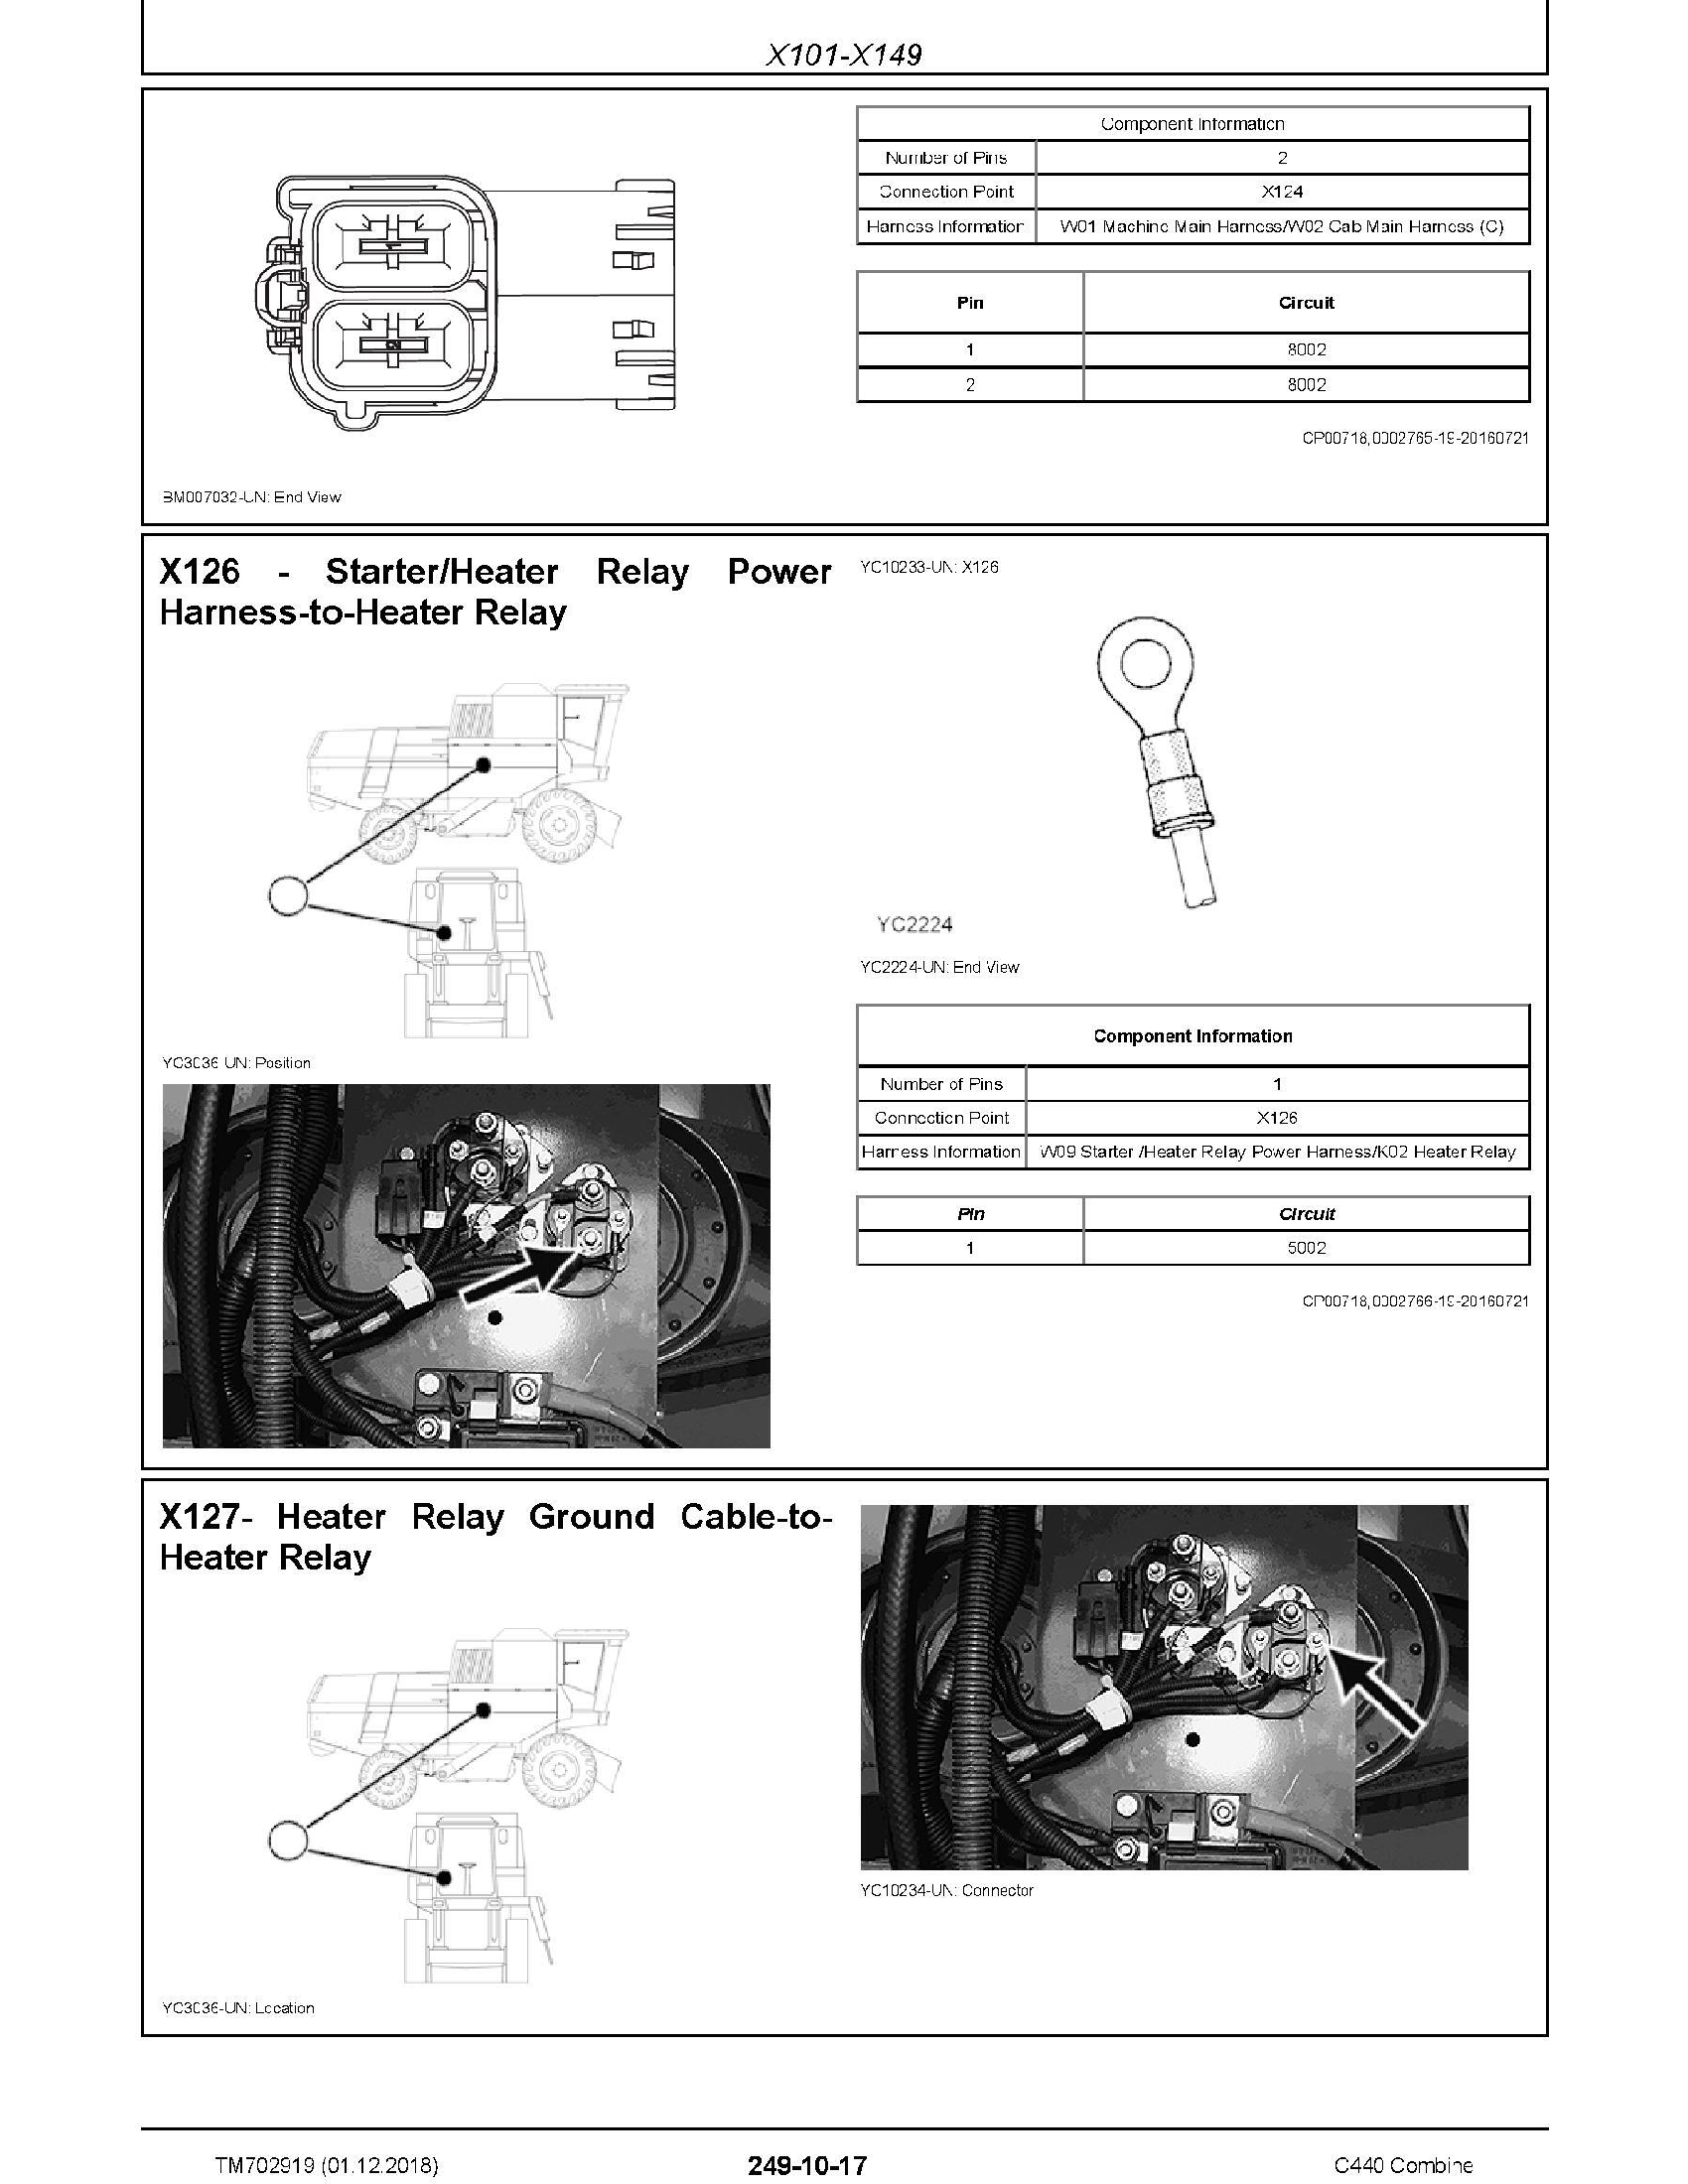 John Deere C440 manual pdf